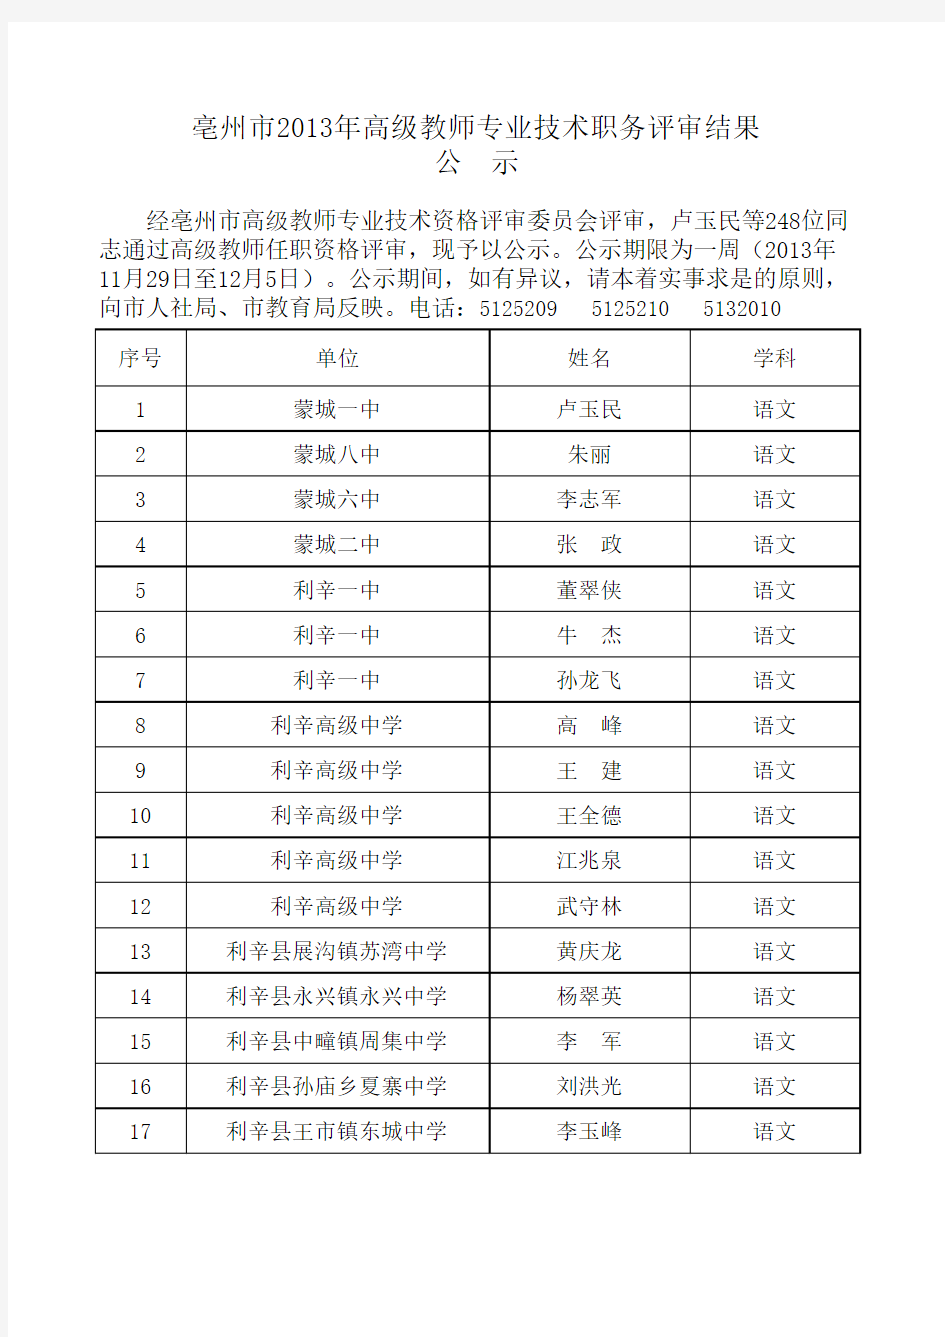 亳州市2013年高级教师专业技术职务评审结果公示